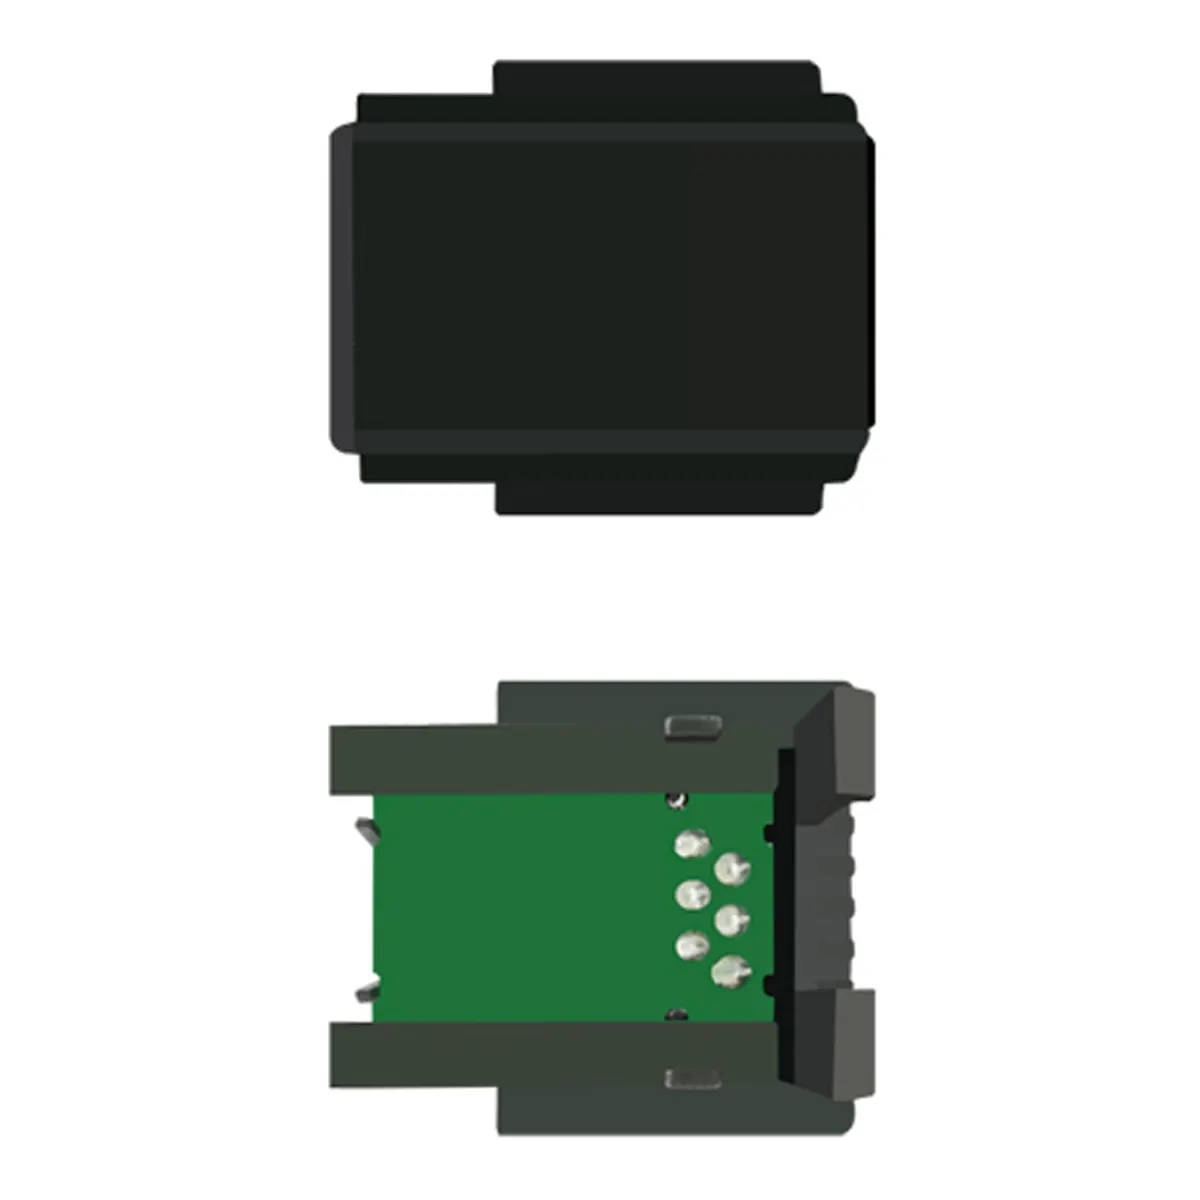 OKI DATA B 730 칩용 칩 레이저 토너 카트리지 리필가능 호환 토너 칩/OKI 블랙 정품